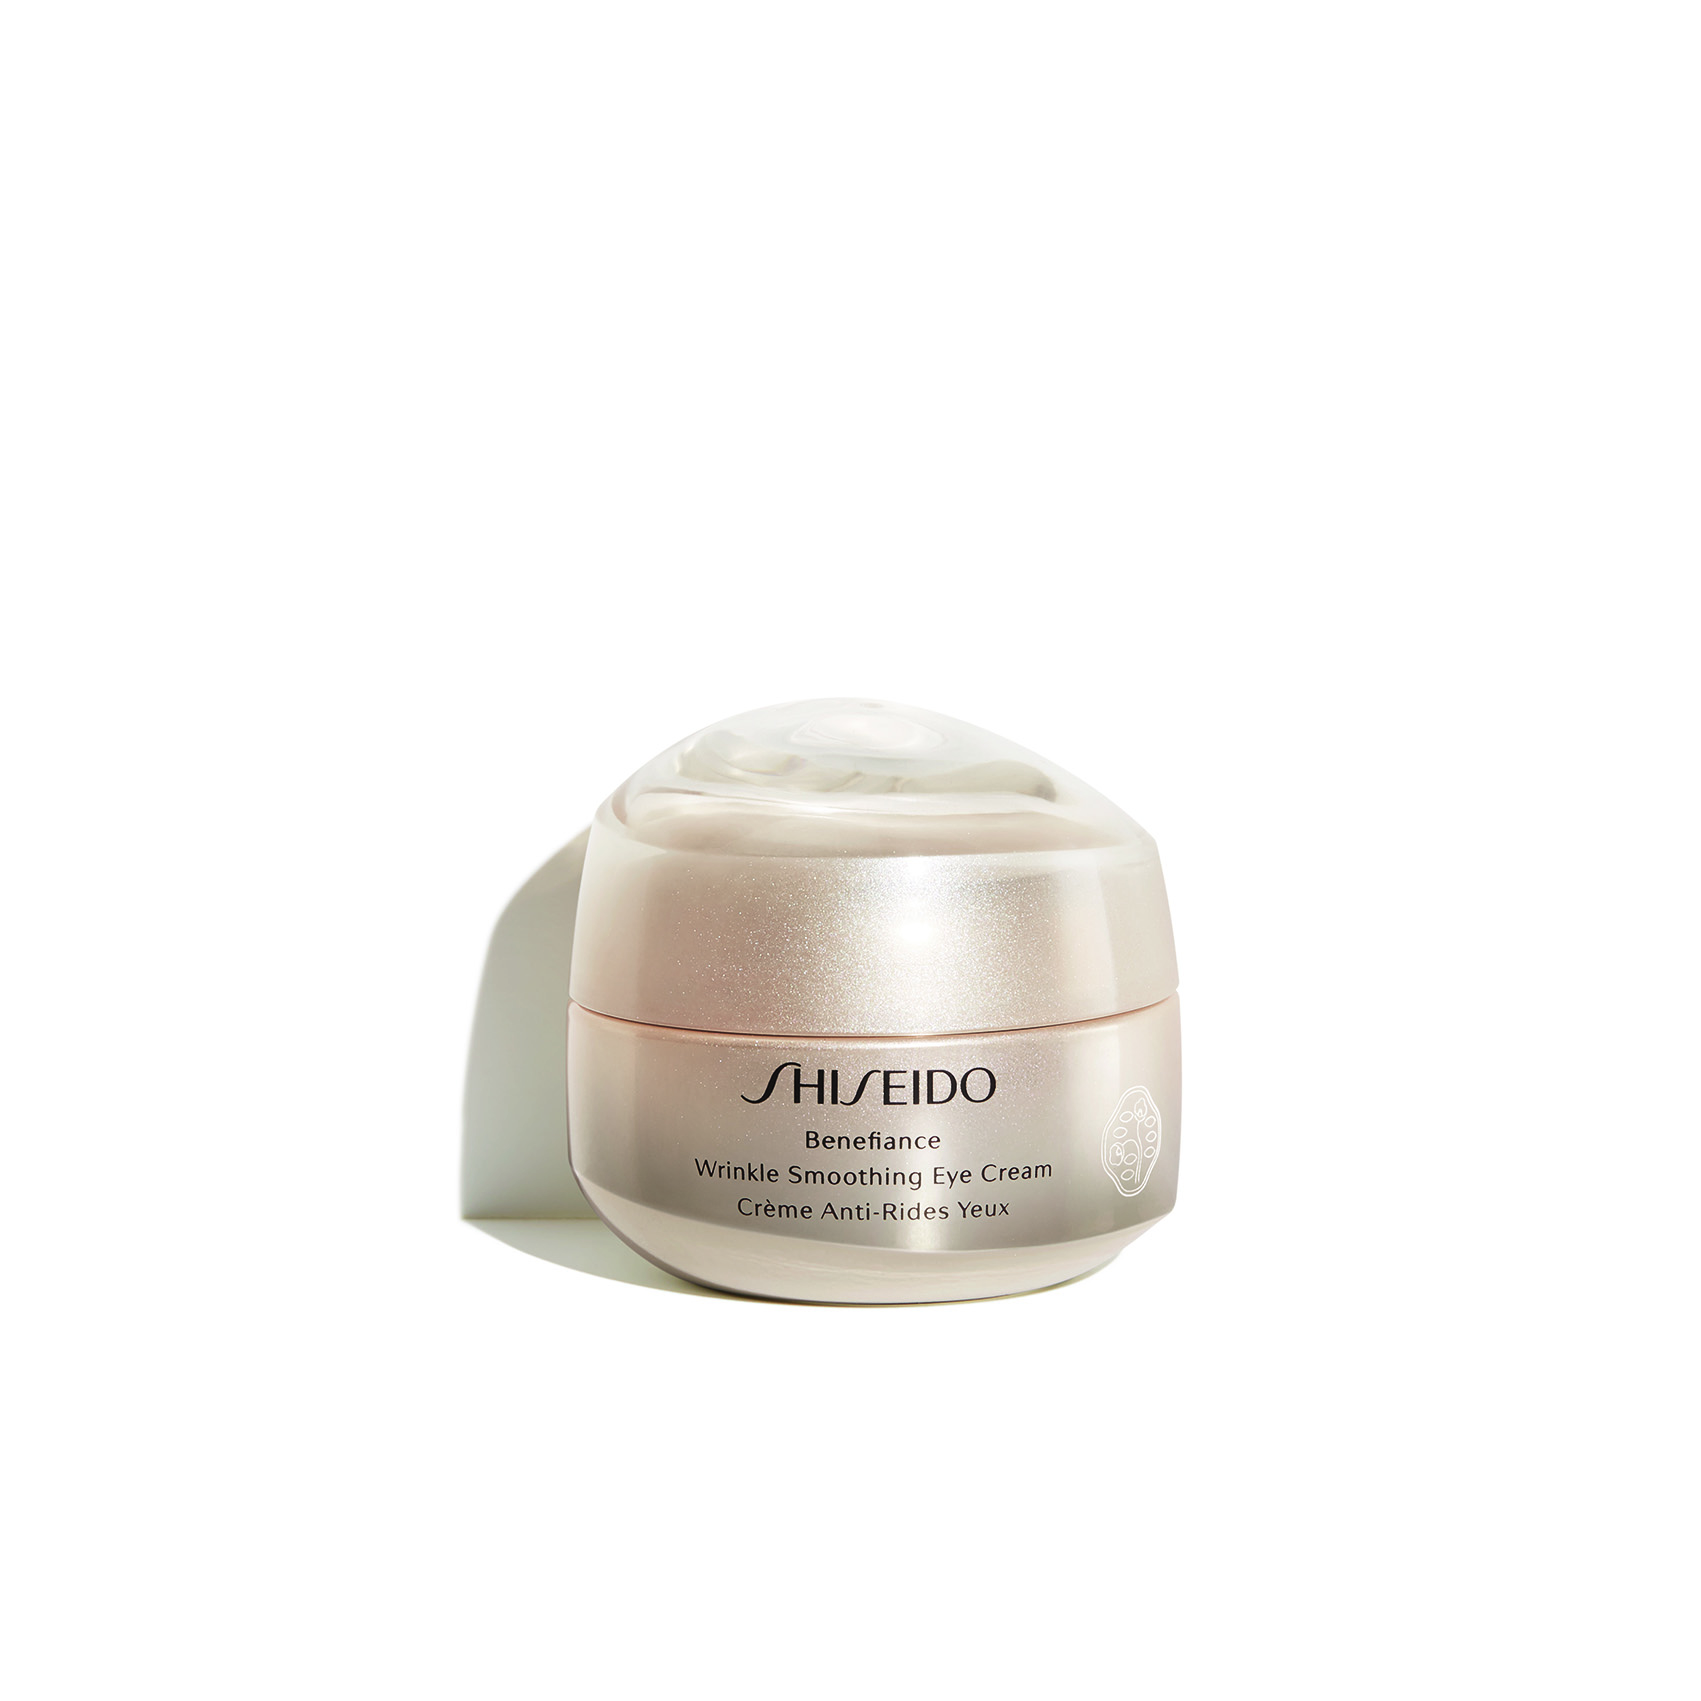 Shiseido Benefiance - Wrinkle Smoothing Eye Cream_front_300dpi